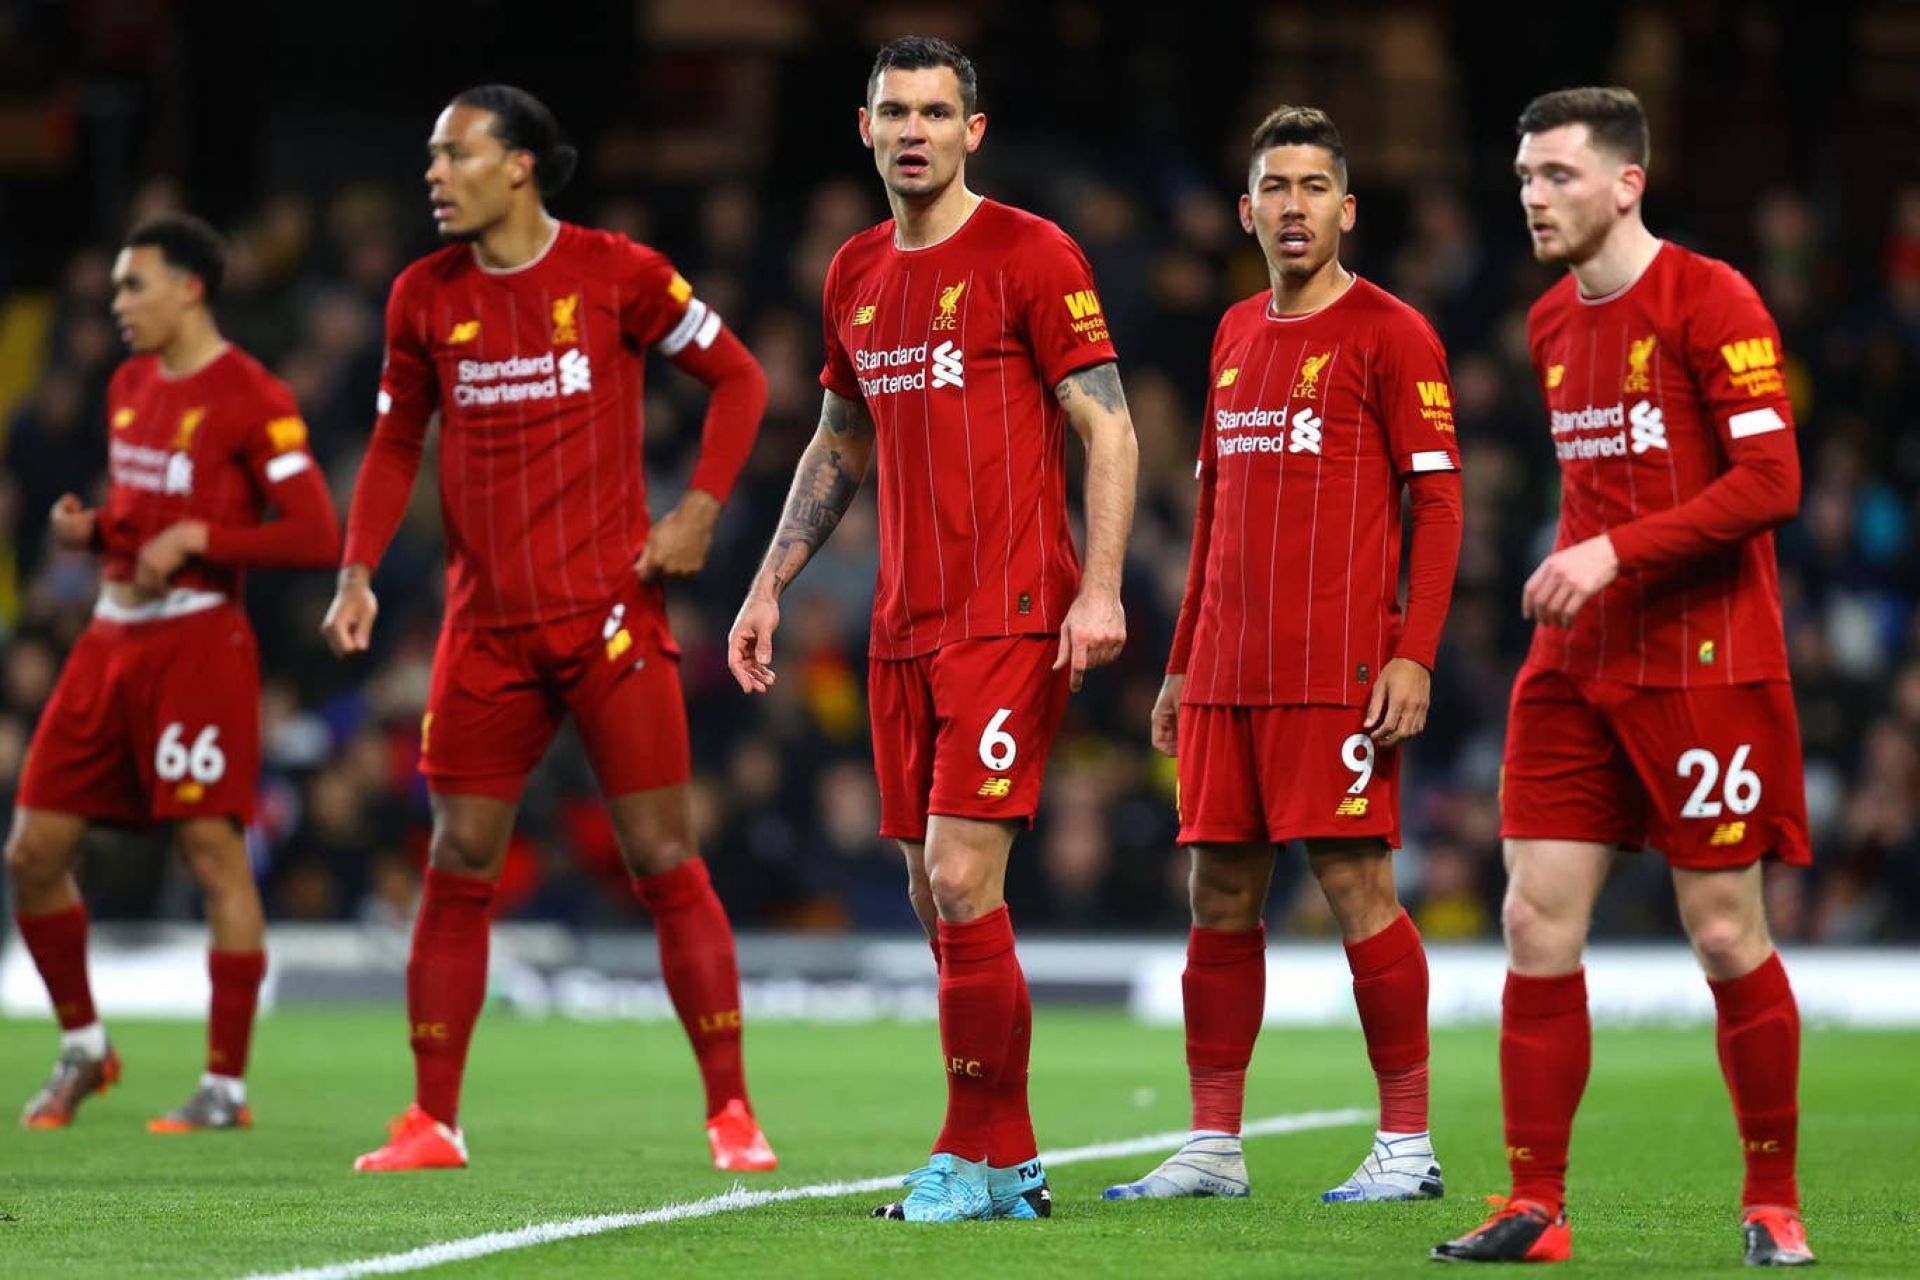 Το αήττητο έσπασε με ηχηρή ήττα | Watford 3-0 Liverpool: Match Review